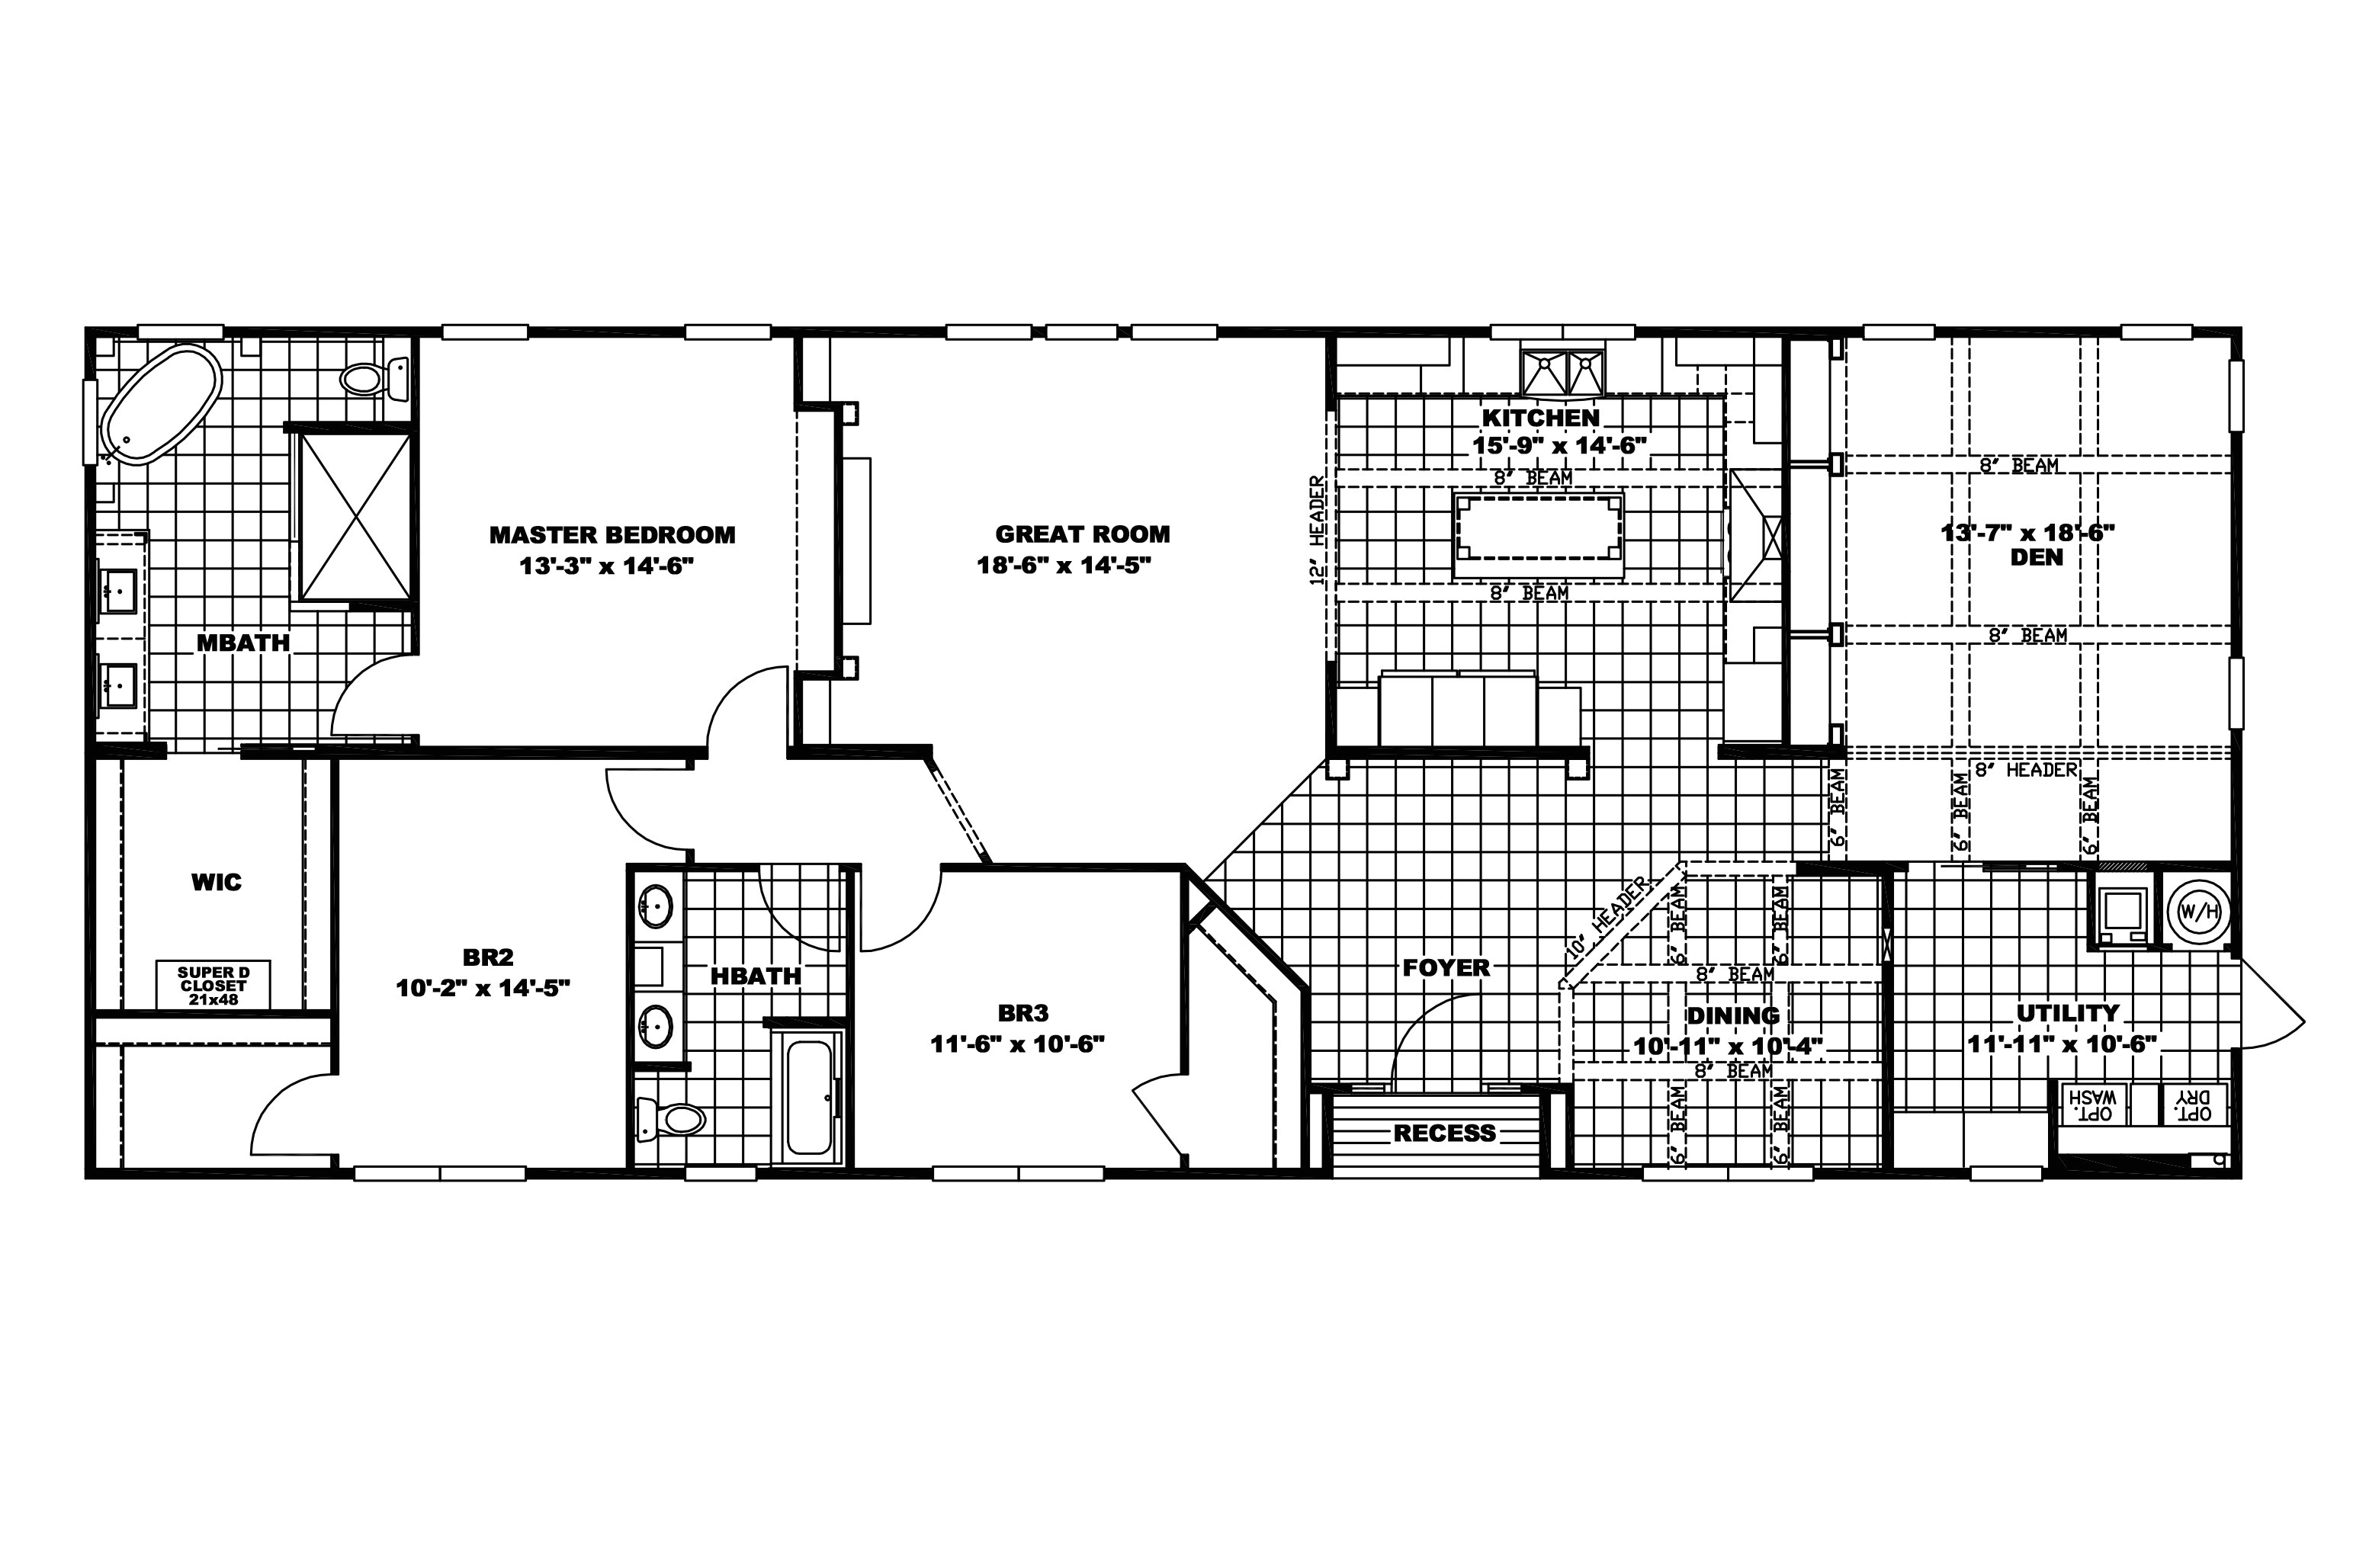 Norris Homes Floor Plans Elegant norris Modular Home Floor Plans New Home Plans